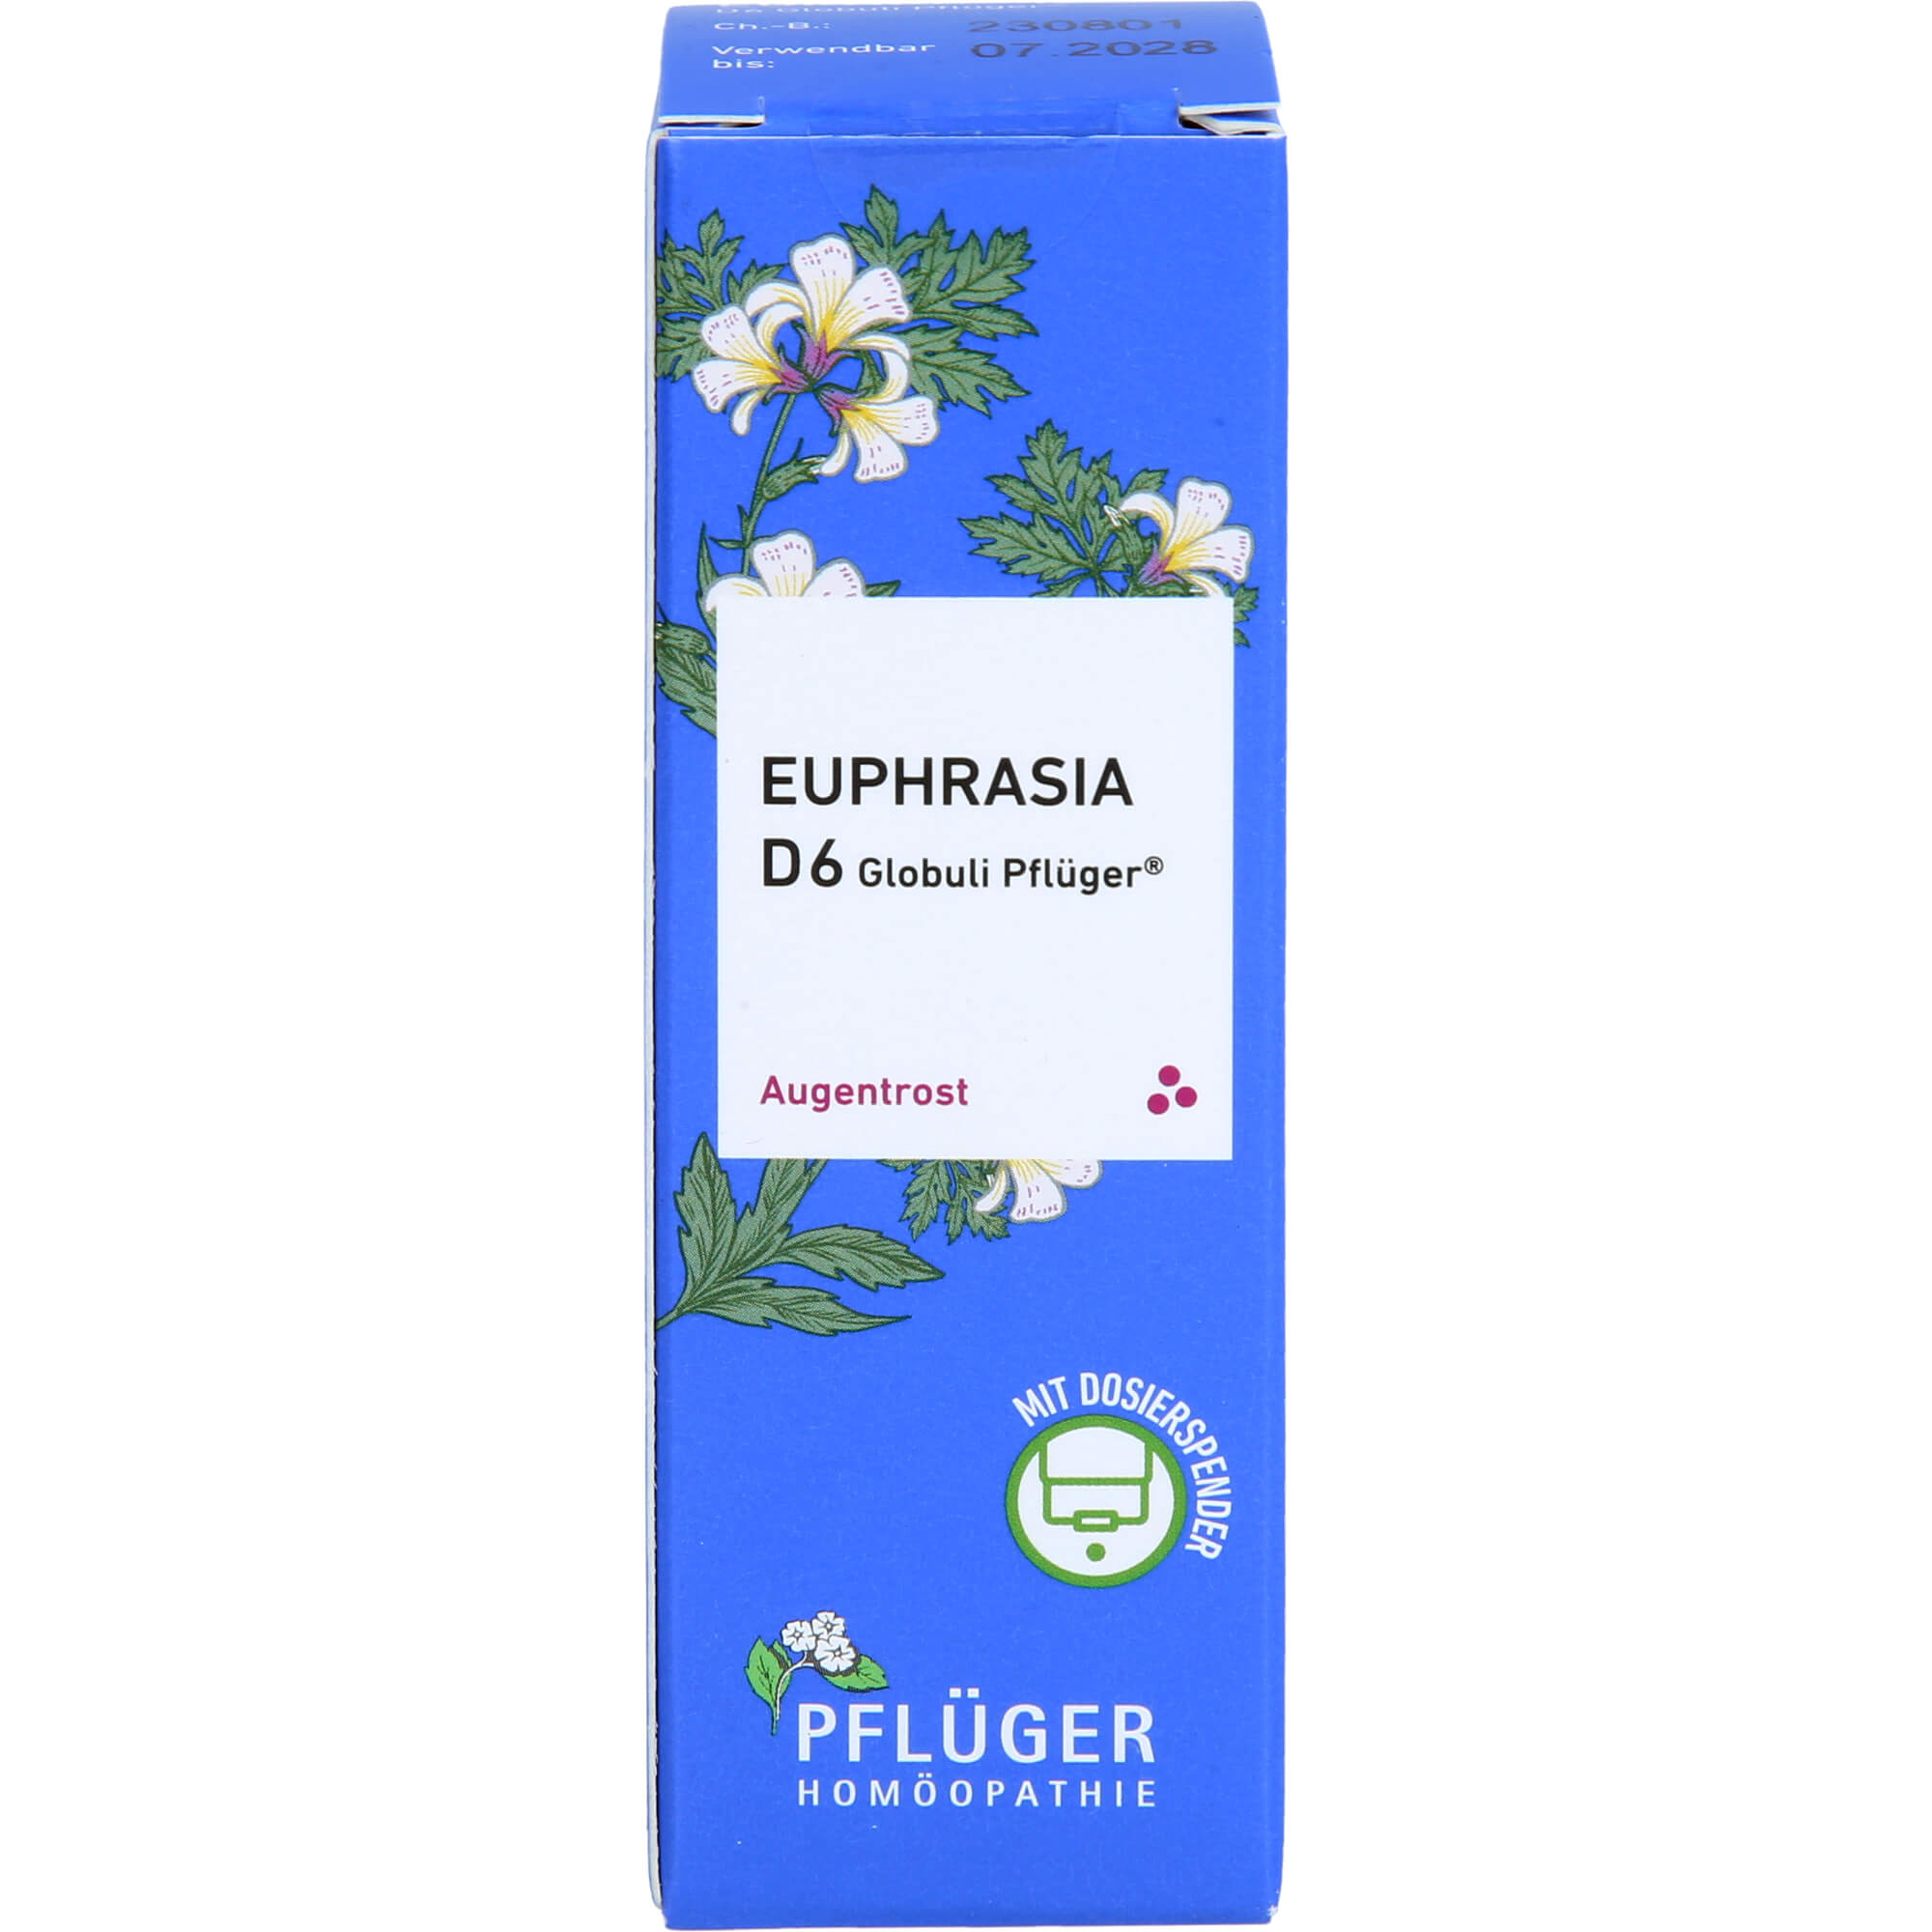 EUPHRASIA D 6 Globuli Pflüger Dosierspender